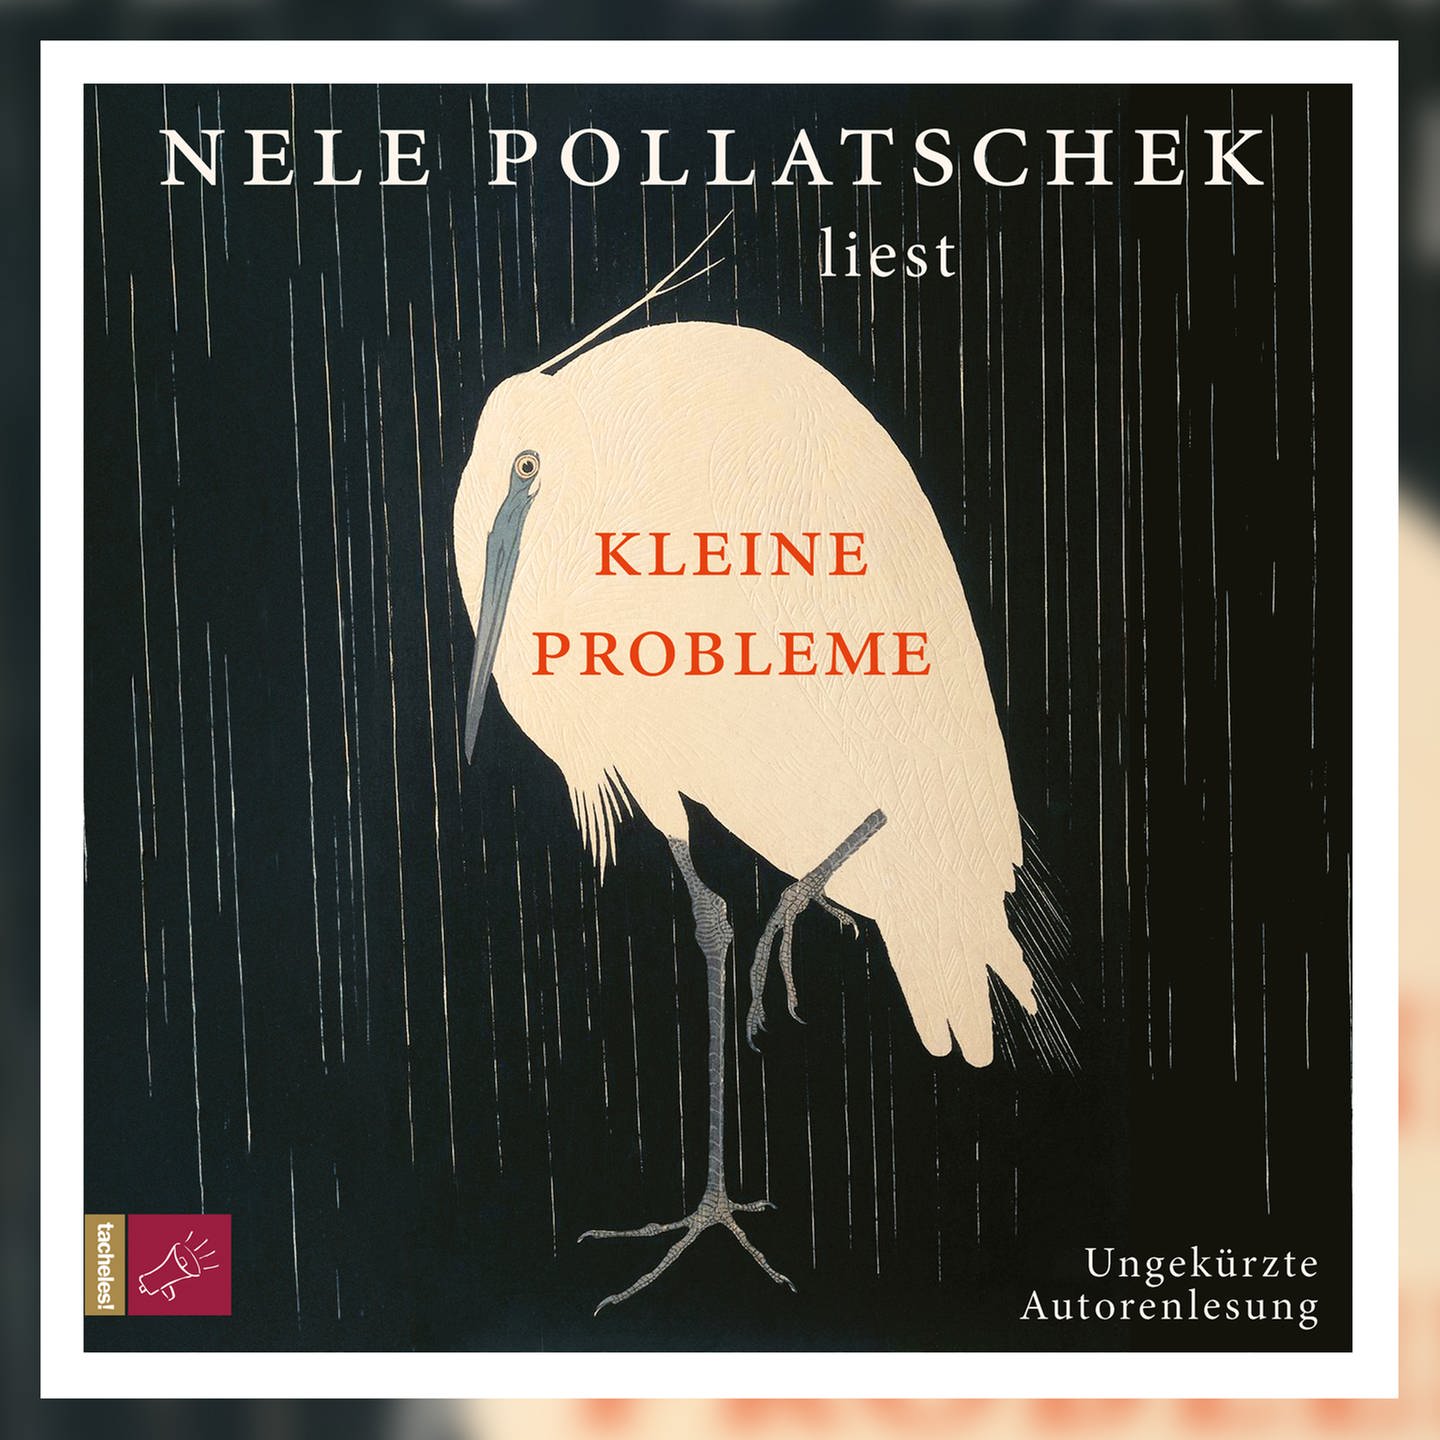 Nele Pollatschek: Kleine Probleme (Buch) in Altona - Hamburg Ottensen